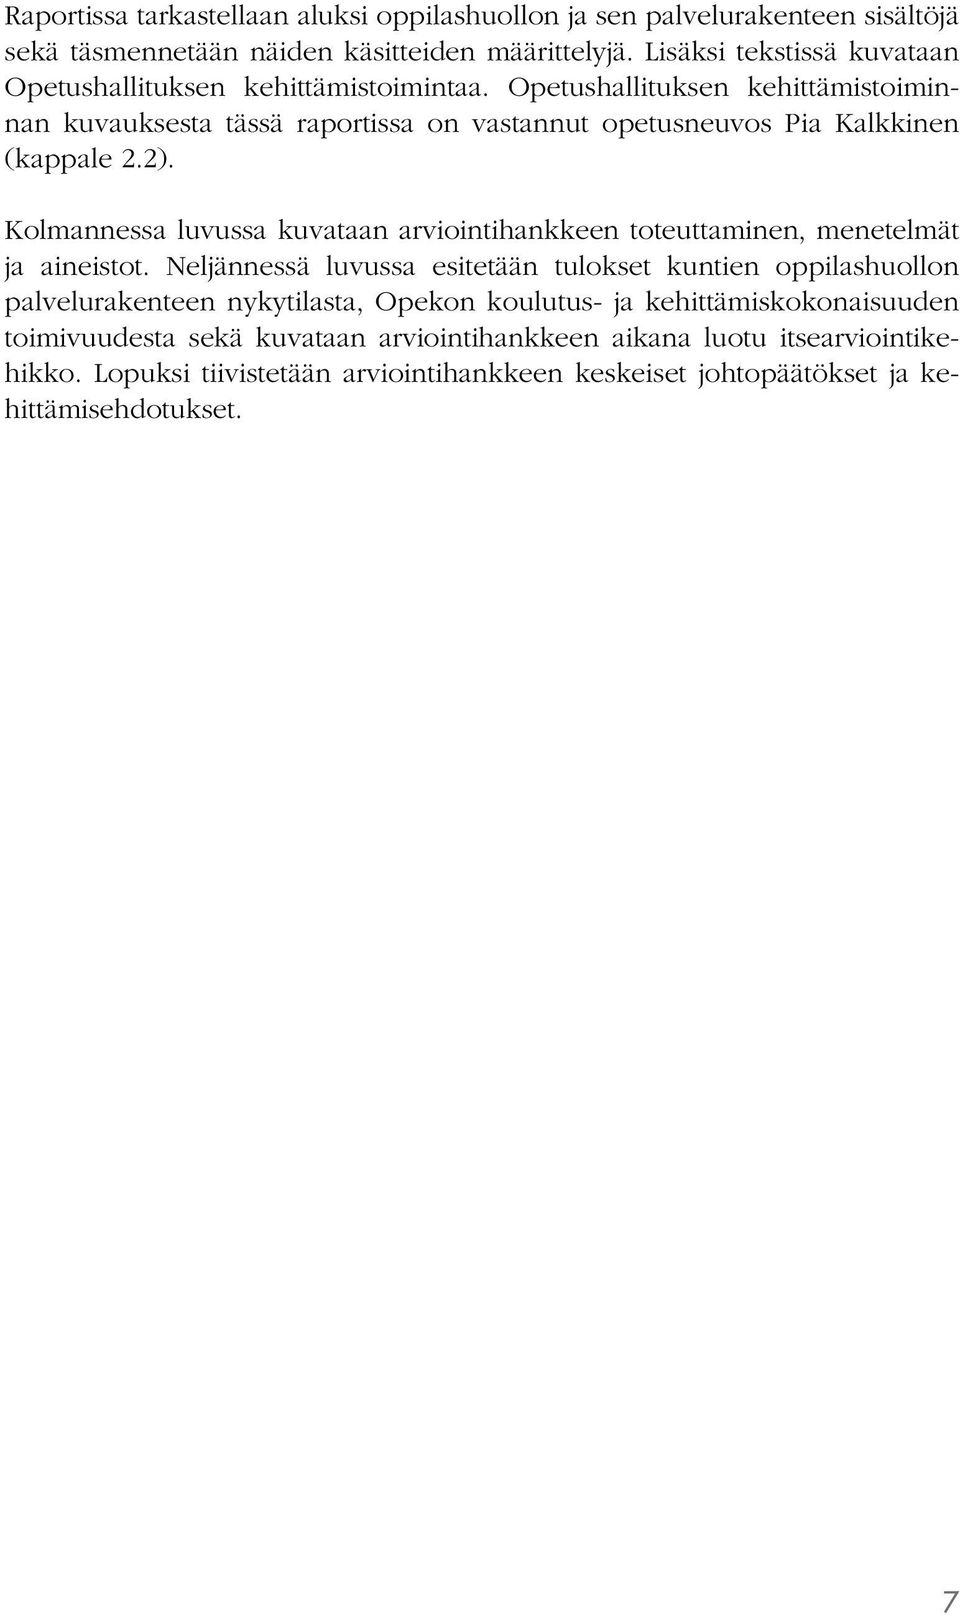 Opetushallituksen kehittämistoiminnan kuvauksesta tässä raportissa on vastannut opetusneuvos Pia Kalkkinen (kappale 2.2).